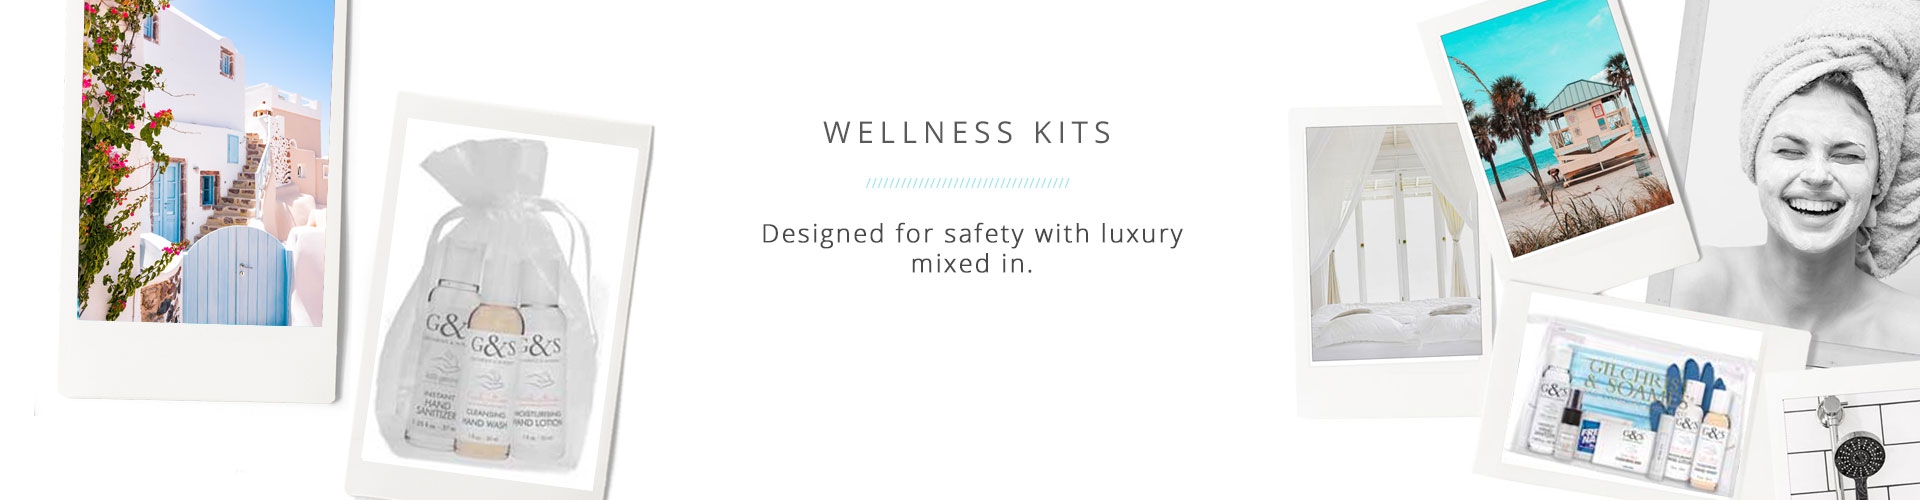 Wellness Kits